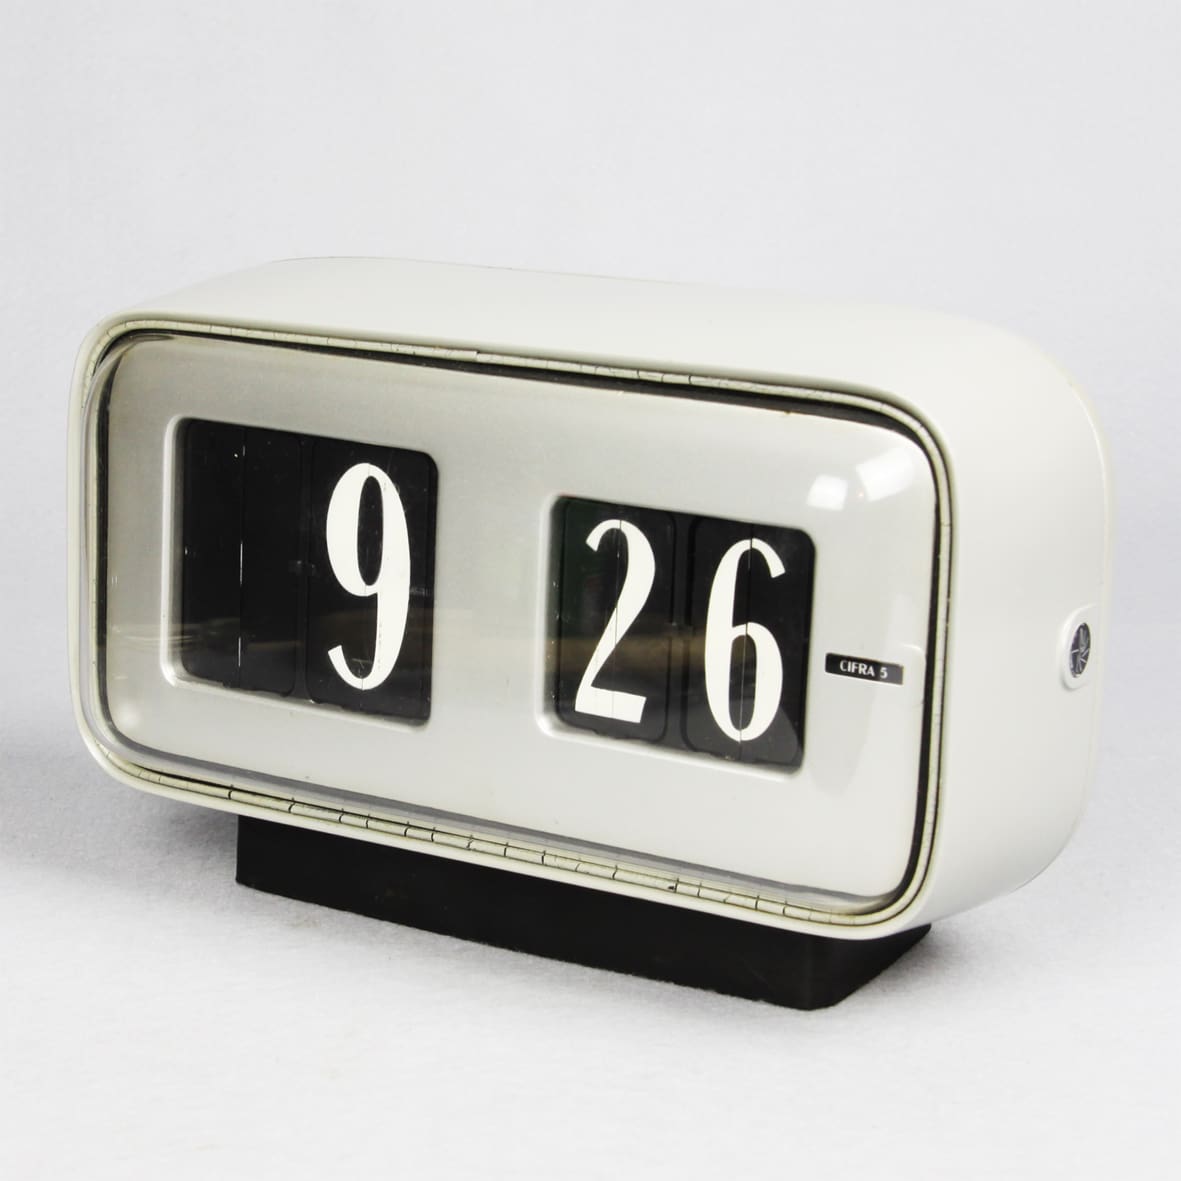 Gino Valle, orologio da tavolo/muro Cifra 5, 1956, Solari Udine, metallo e materiali polimerici, 15x28×11 cm. Noleggiocose di Andrea Moscardi